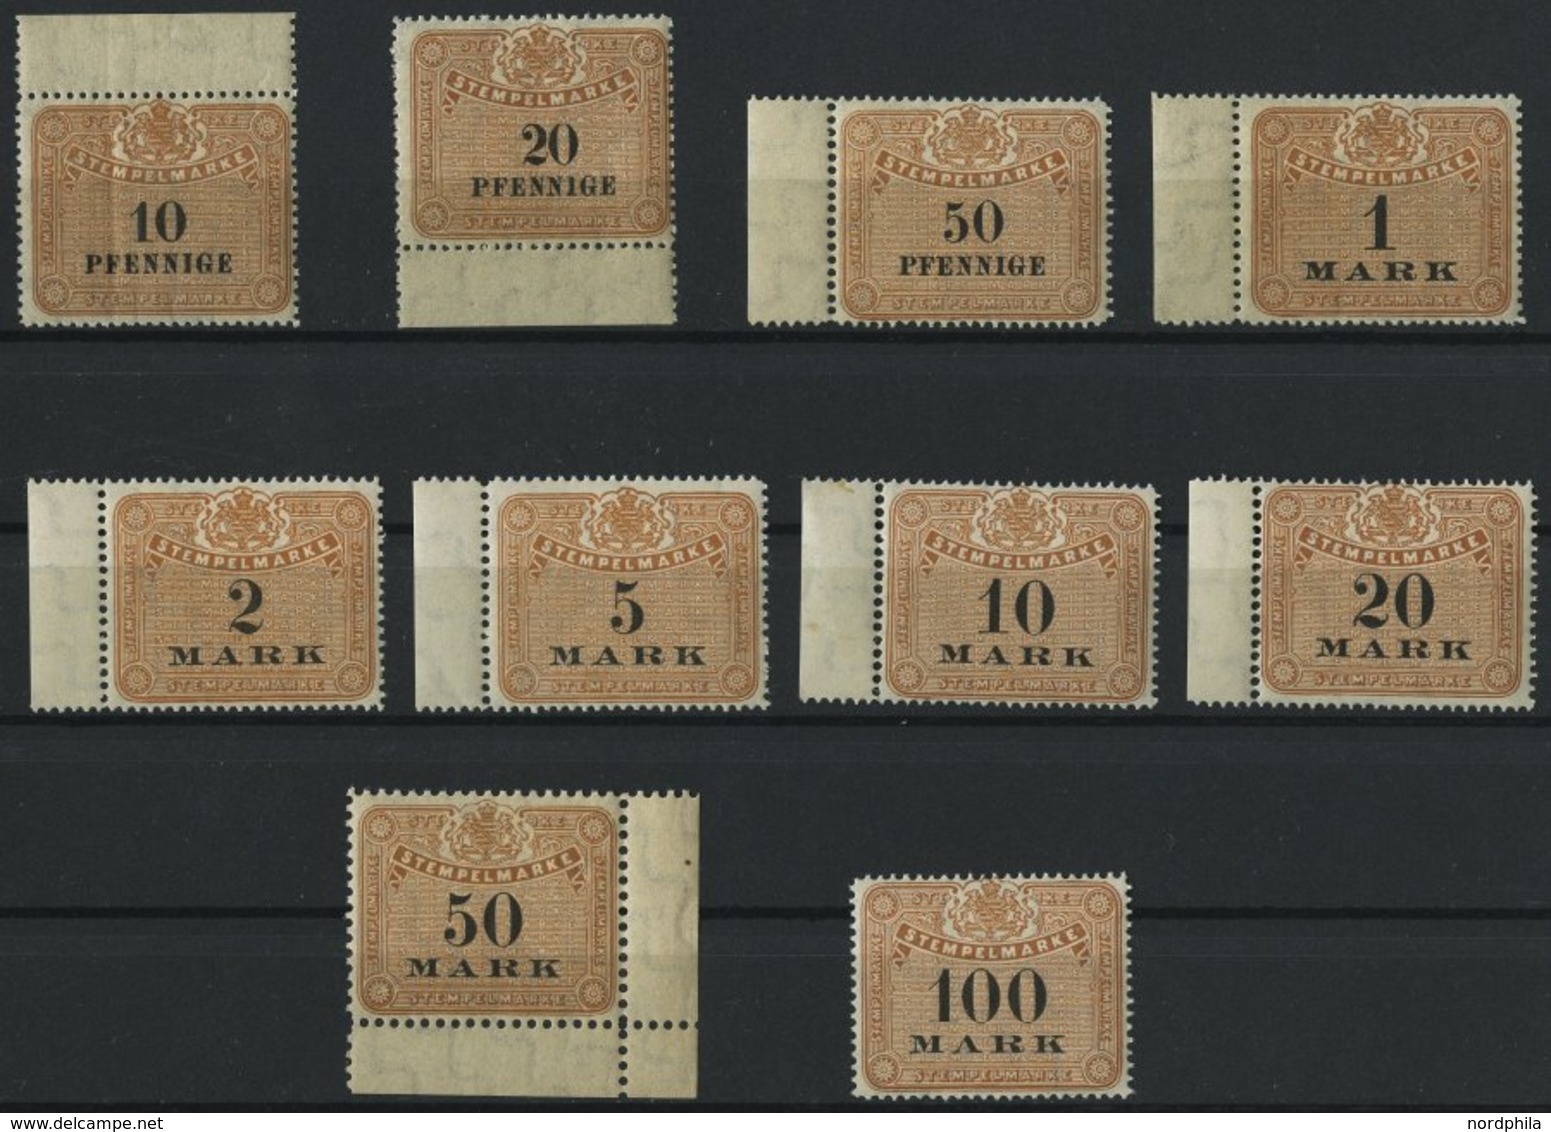 SACHSEN **, 1910, 10 Pf. - 100 Mk. Stempelmarken, Wz. Treppen, 10 Werte Postfrisch, Pracht - Sachsen